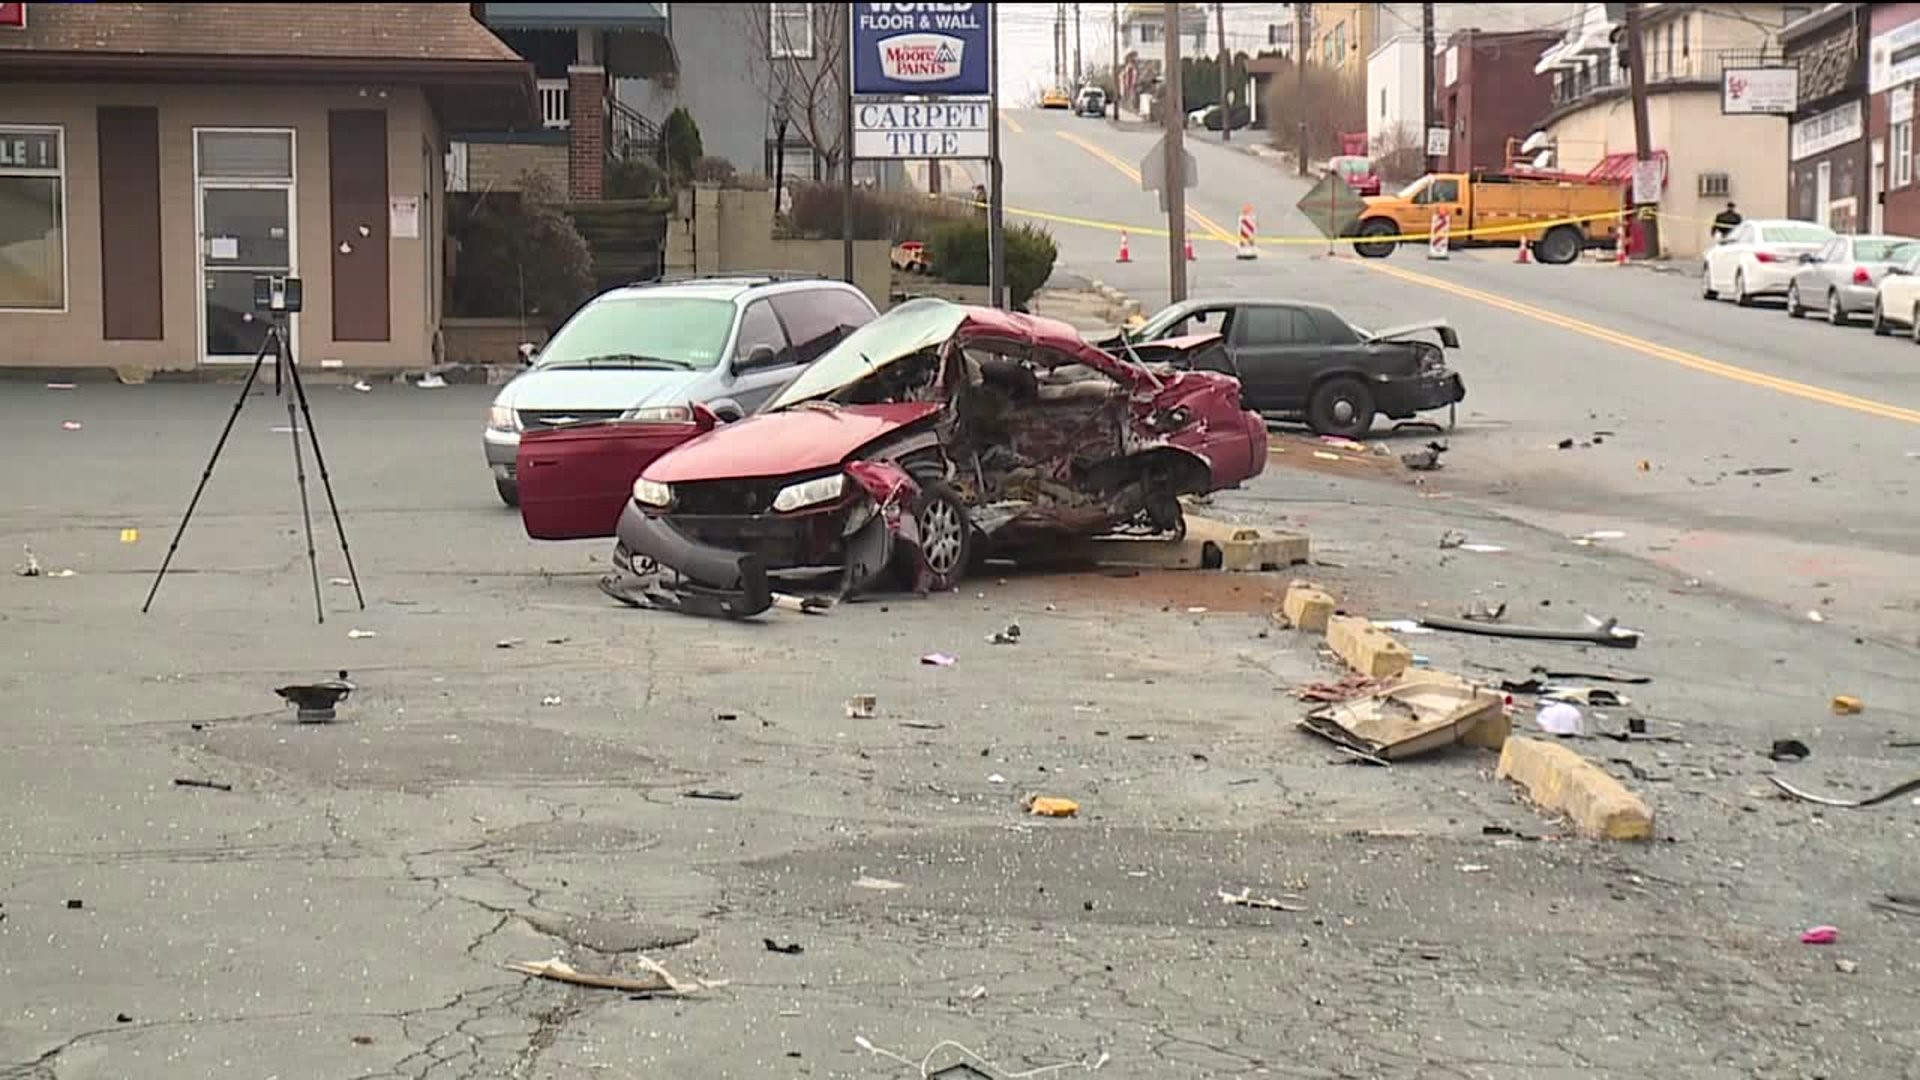 Driver Sentenced for Deadly DUI Crash in Scranton